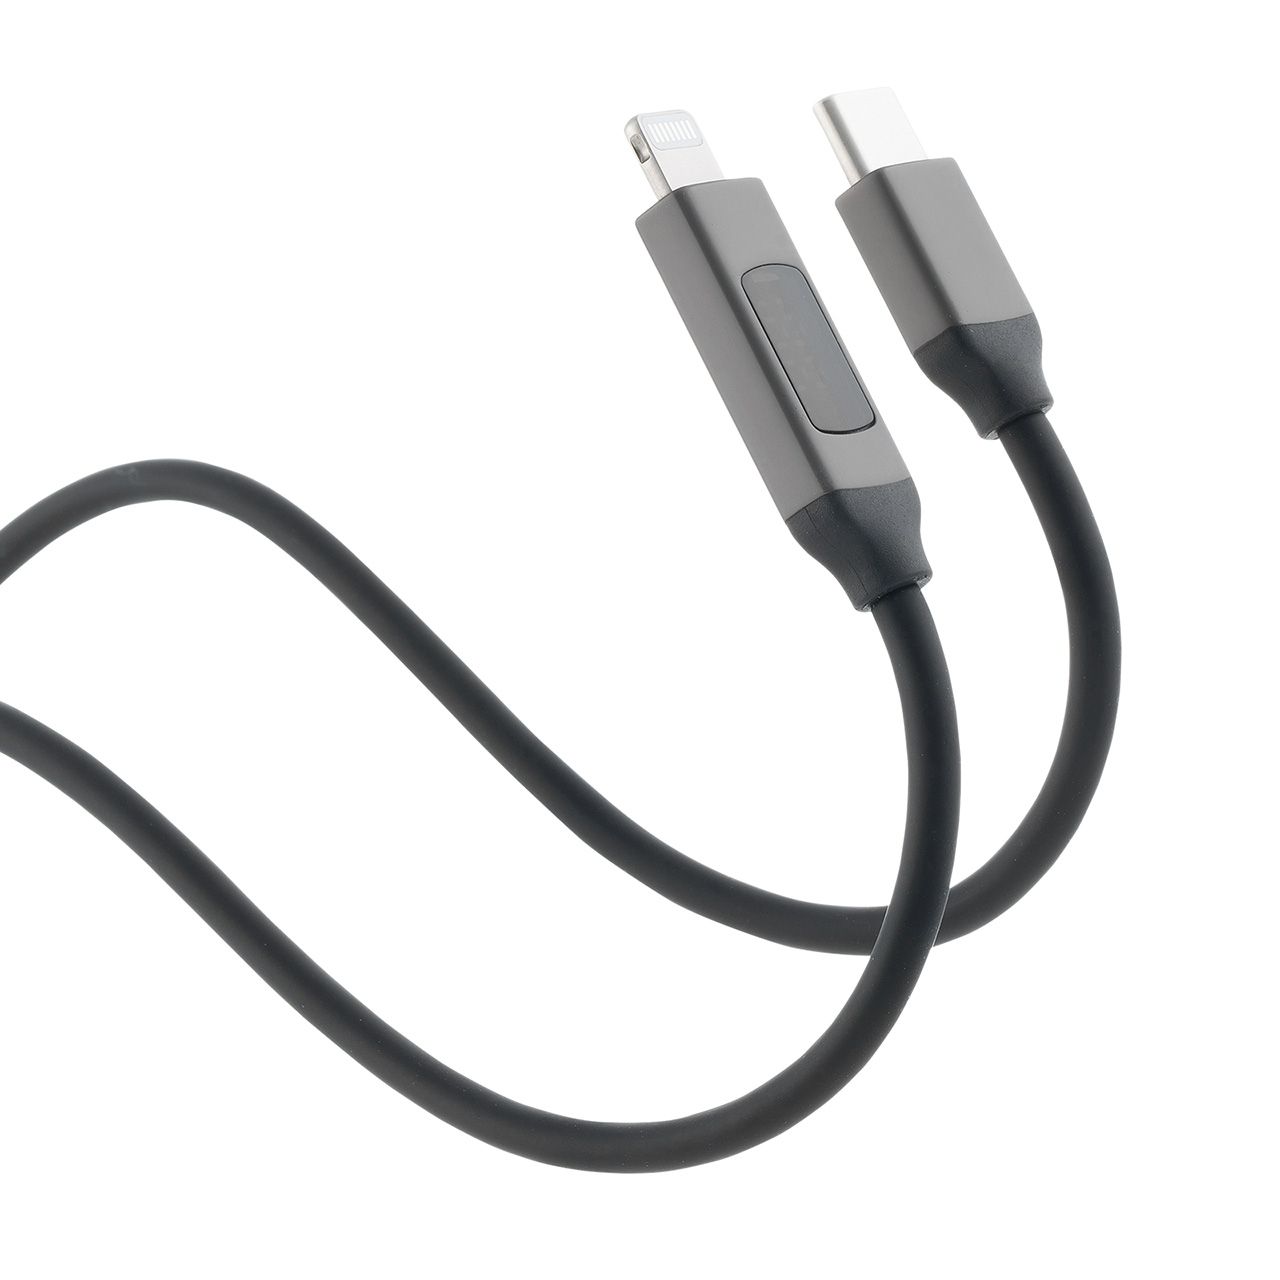 PD電力表示機能付き USB Type-C Lightning ケーブル Apple MFi認証品 PD36W対応 1m やわらかシリコンケーブル  充電 データ転送 iPhone iPad ブラック 500-IPLM032BKの販売商品 | 通販ならサンワダイレクト